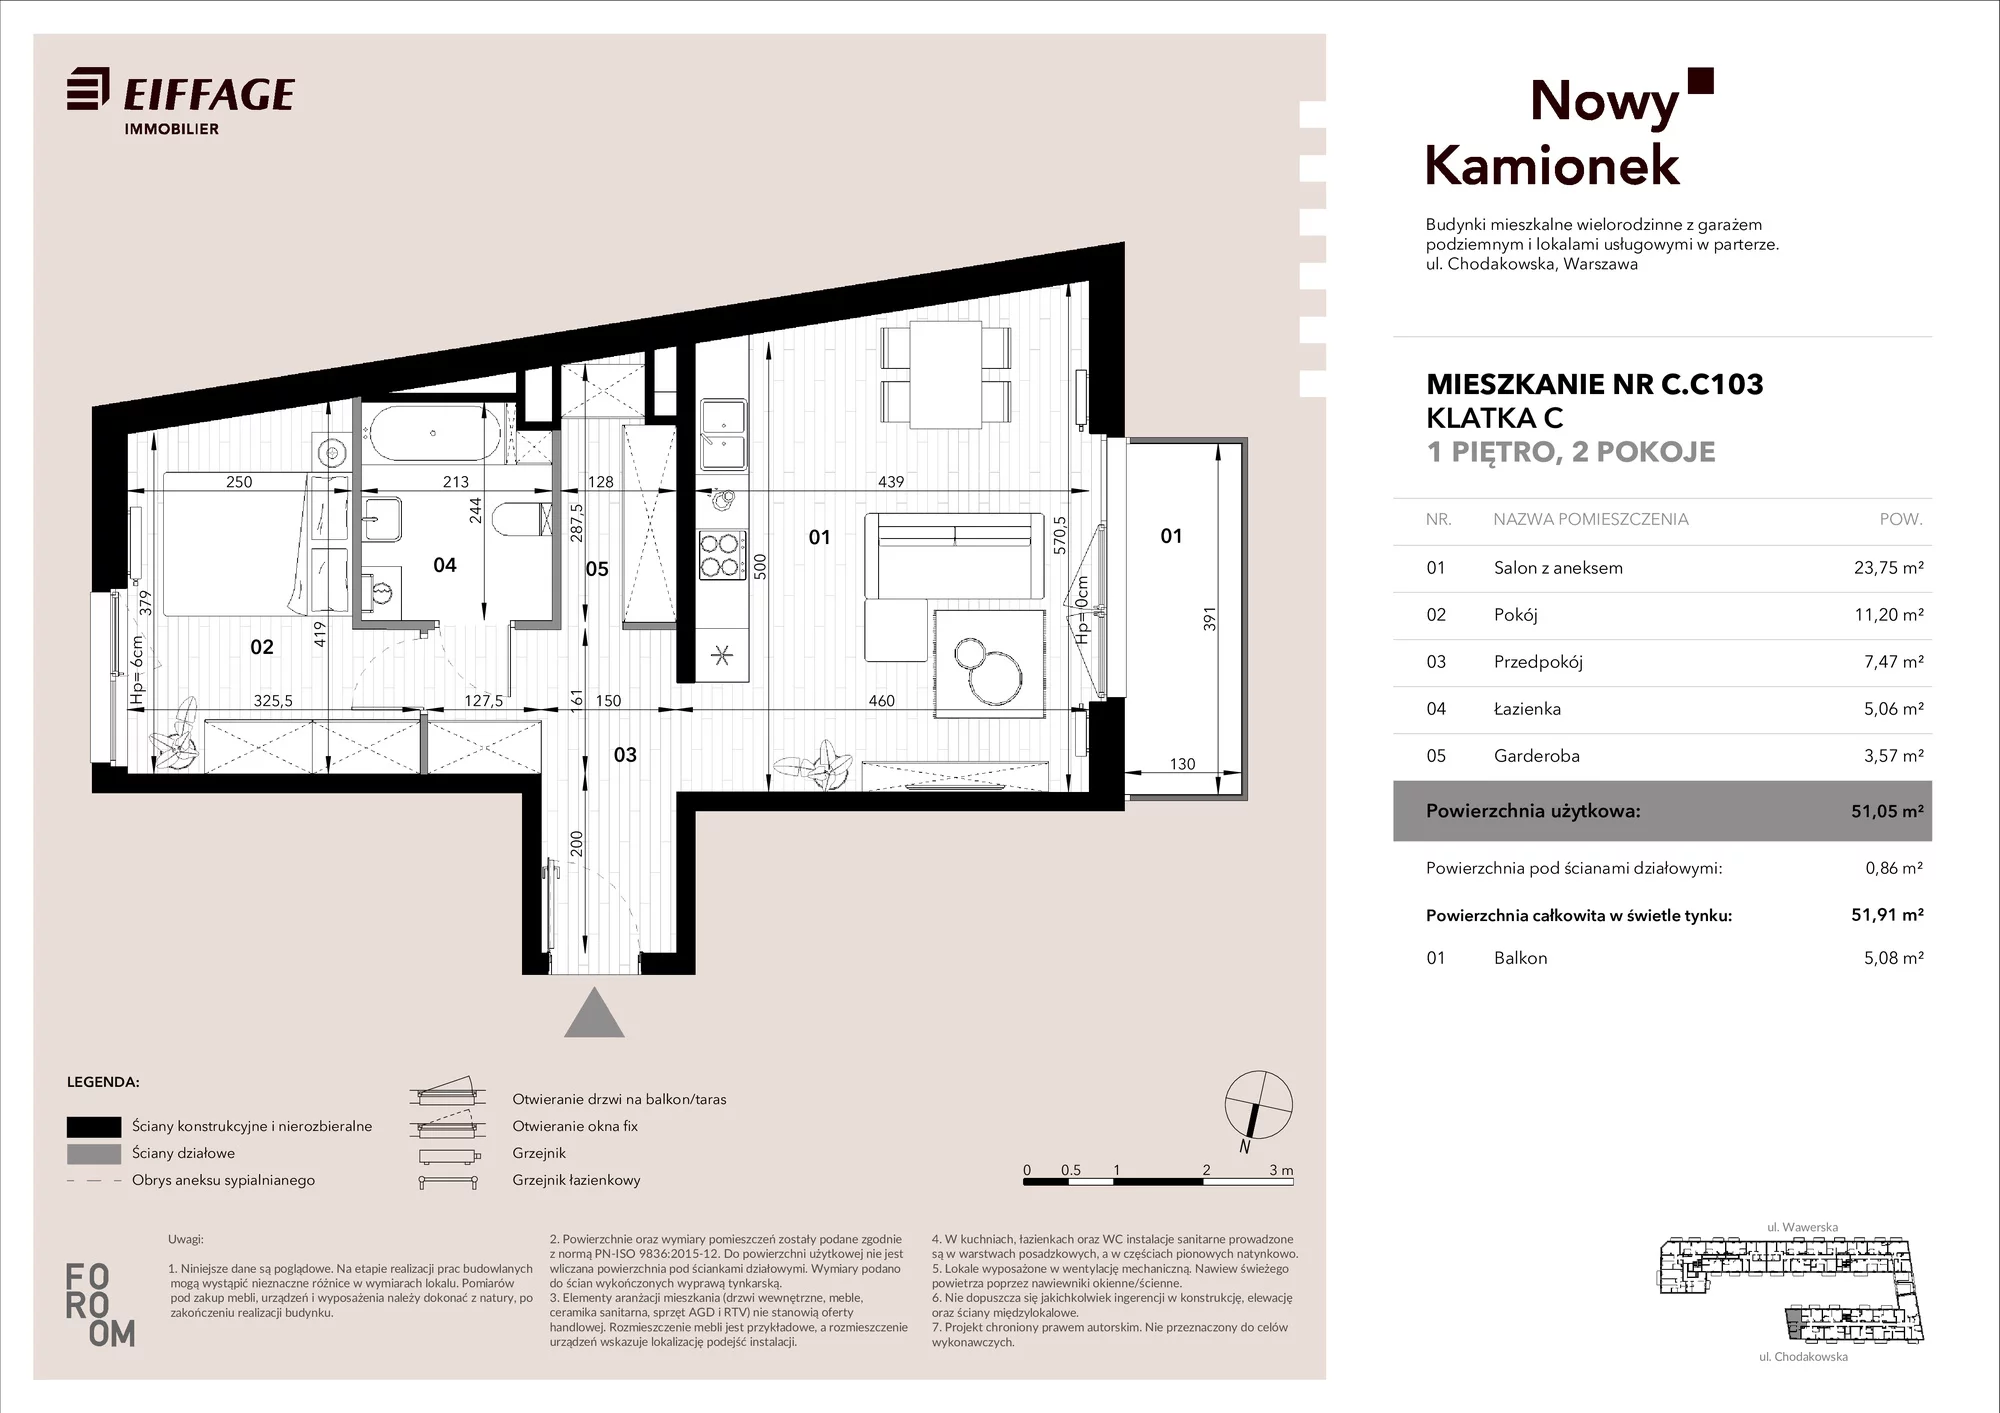 Mieszkanie 51,05 m², piętro 1, oferta nr C.C103, Nowy Kamionek, Warszawa, Praga Południe, Kamionek, ul. Chodakowska